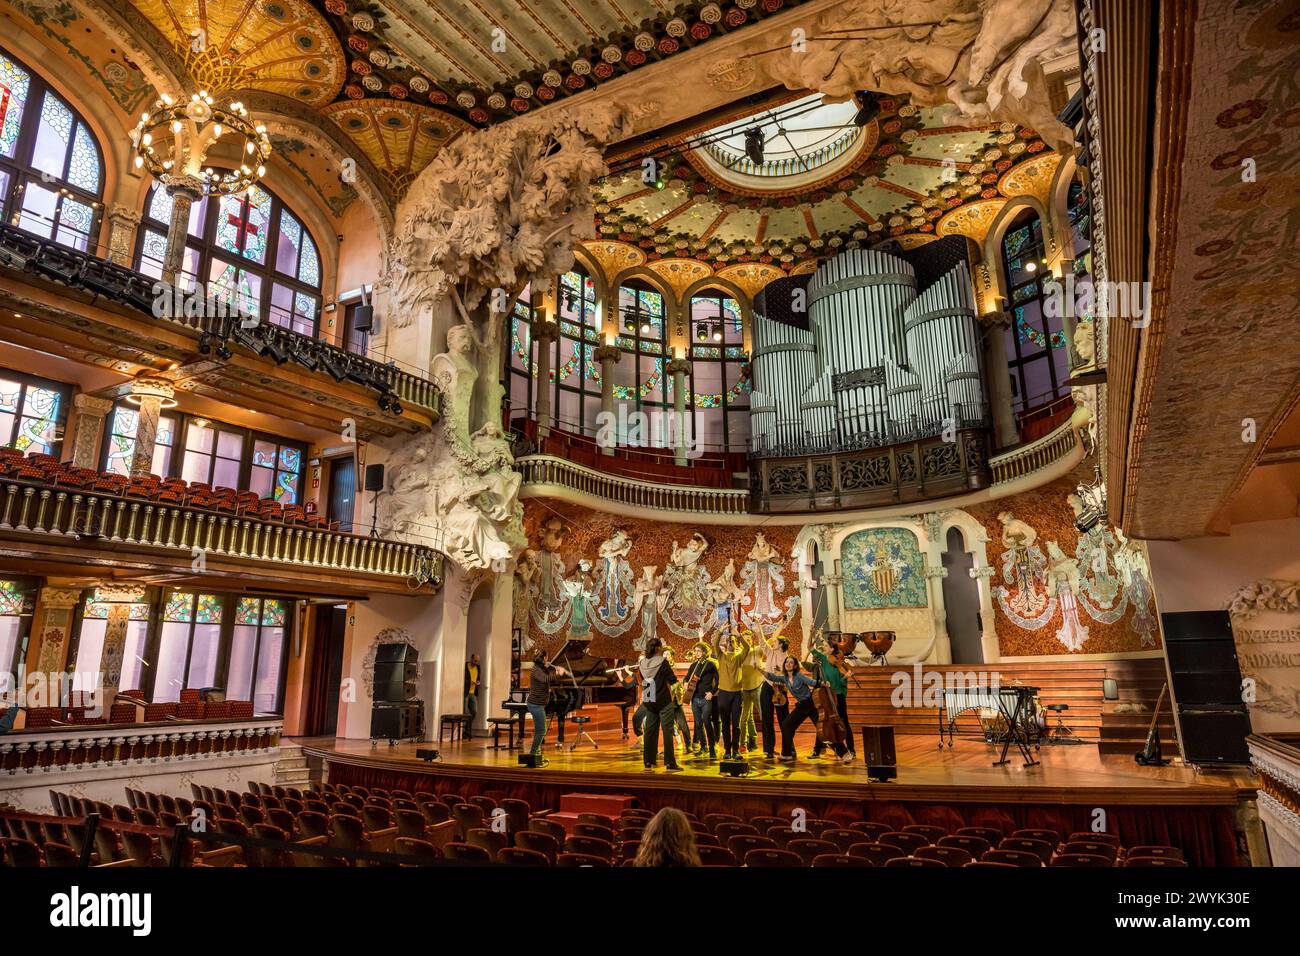 Espagne, Catalogne, Barcelone, Palau de la Musica Catalana, salle de concert conçue par l'architecte du modernisme catalan Lluis Domènech i Montaner, classée au patrimoine mondial de l'UNESCO Banque D'Images